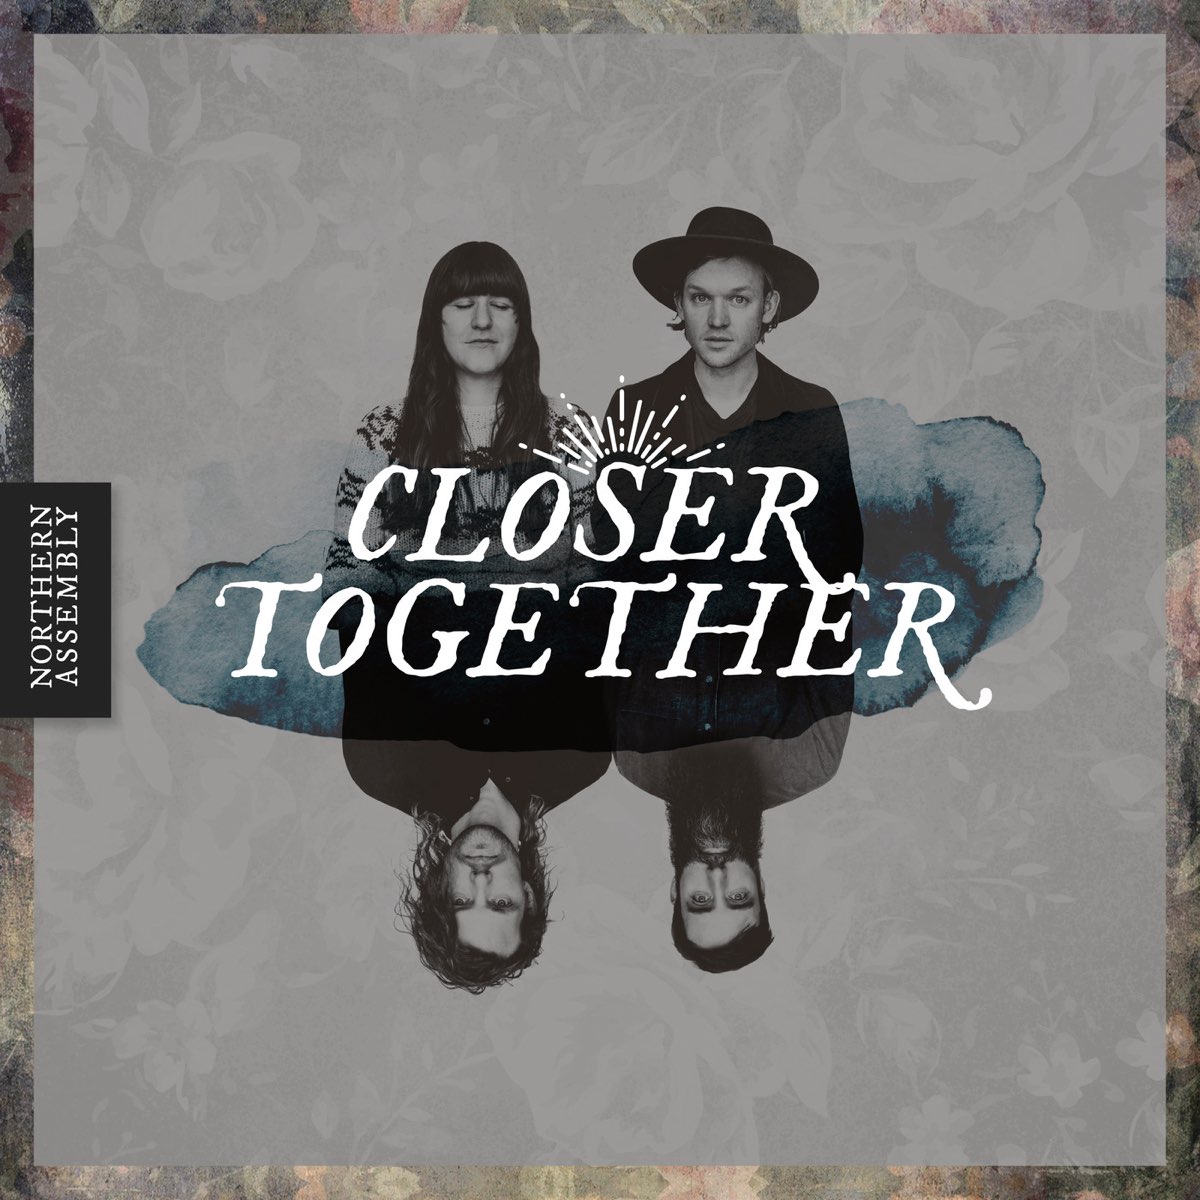 Closer together